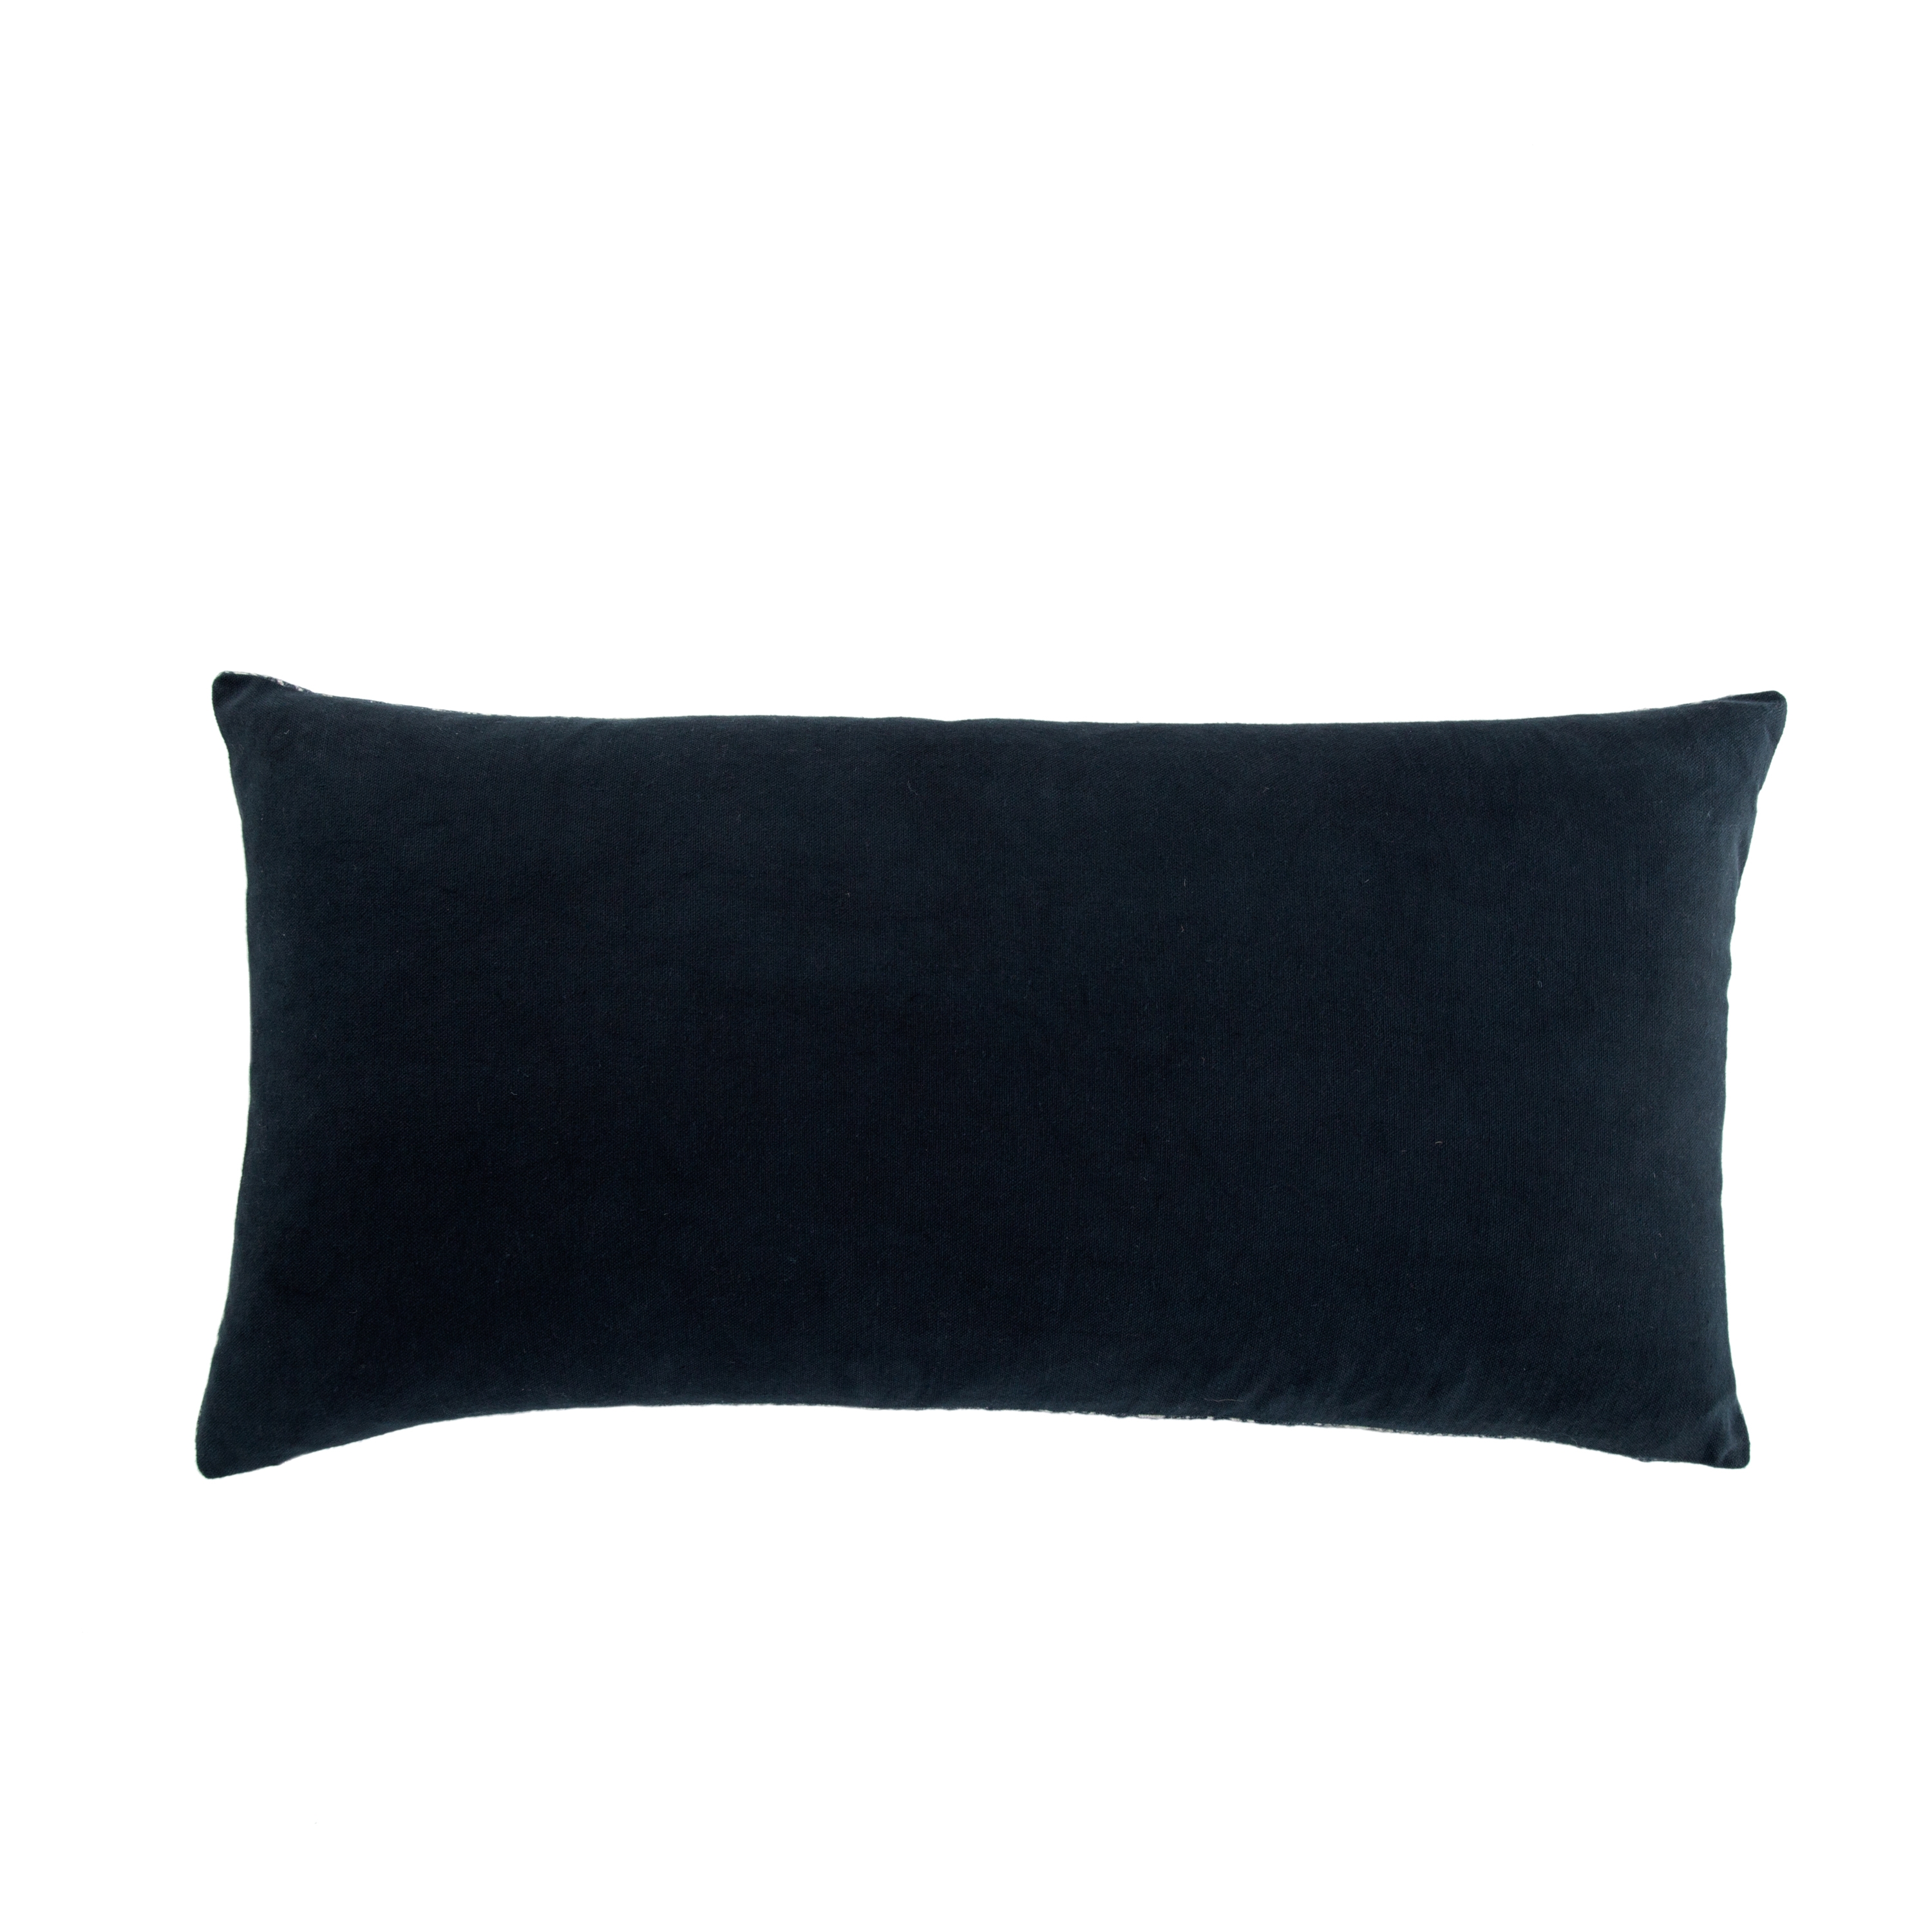 Holi Lumbar Pillow, Blue, 24" x 12" - Down - Image 1